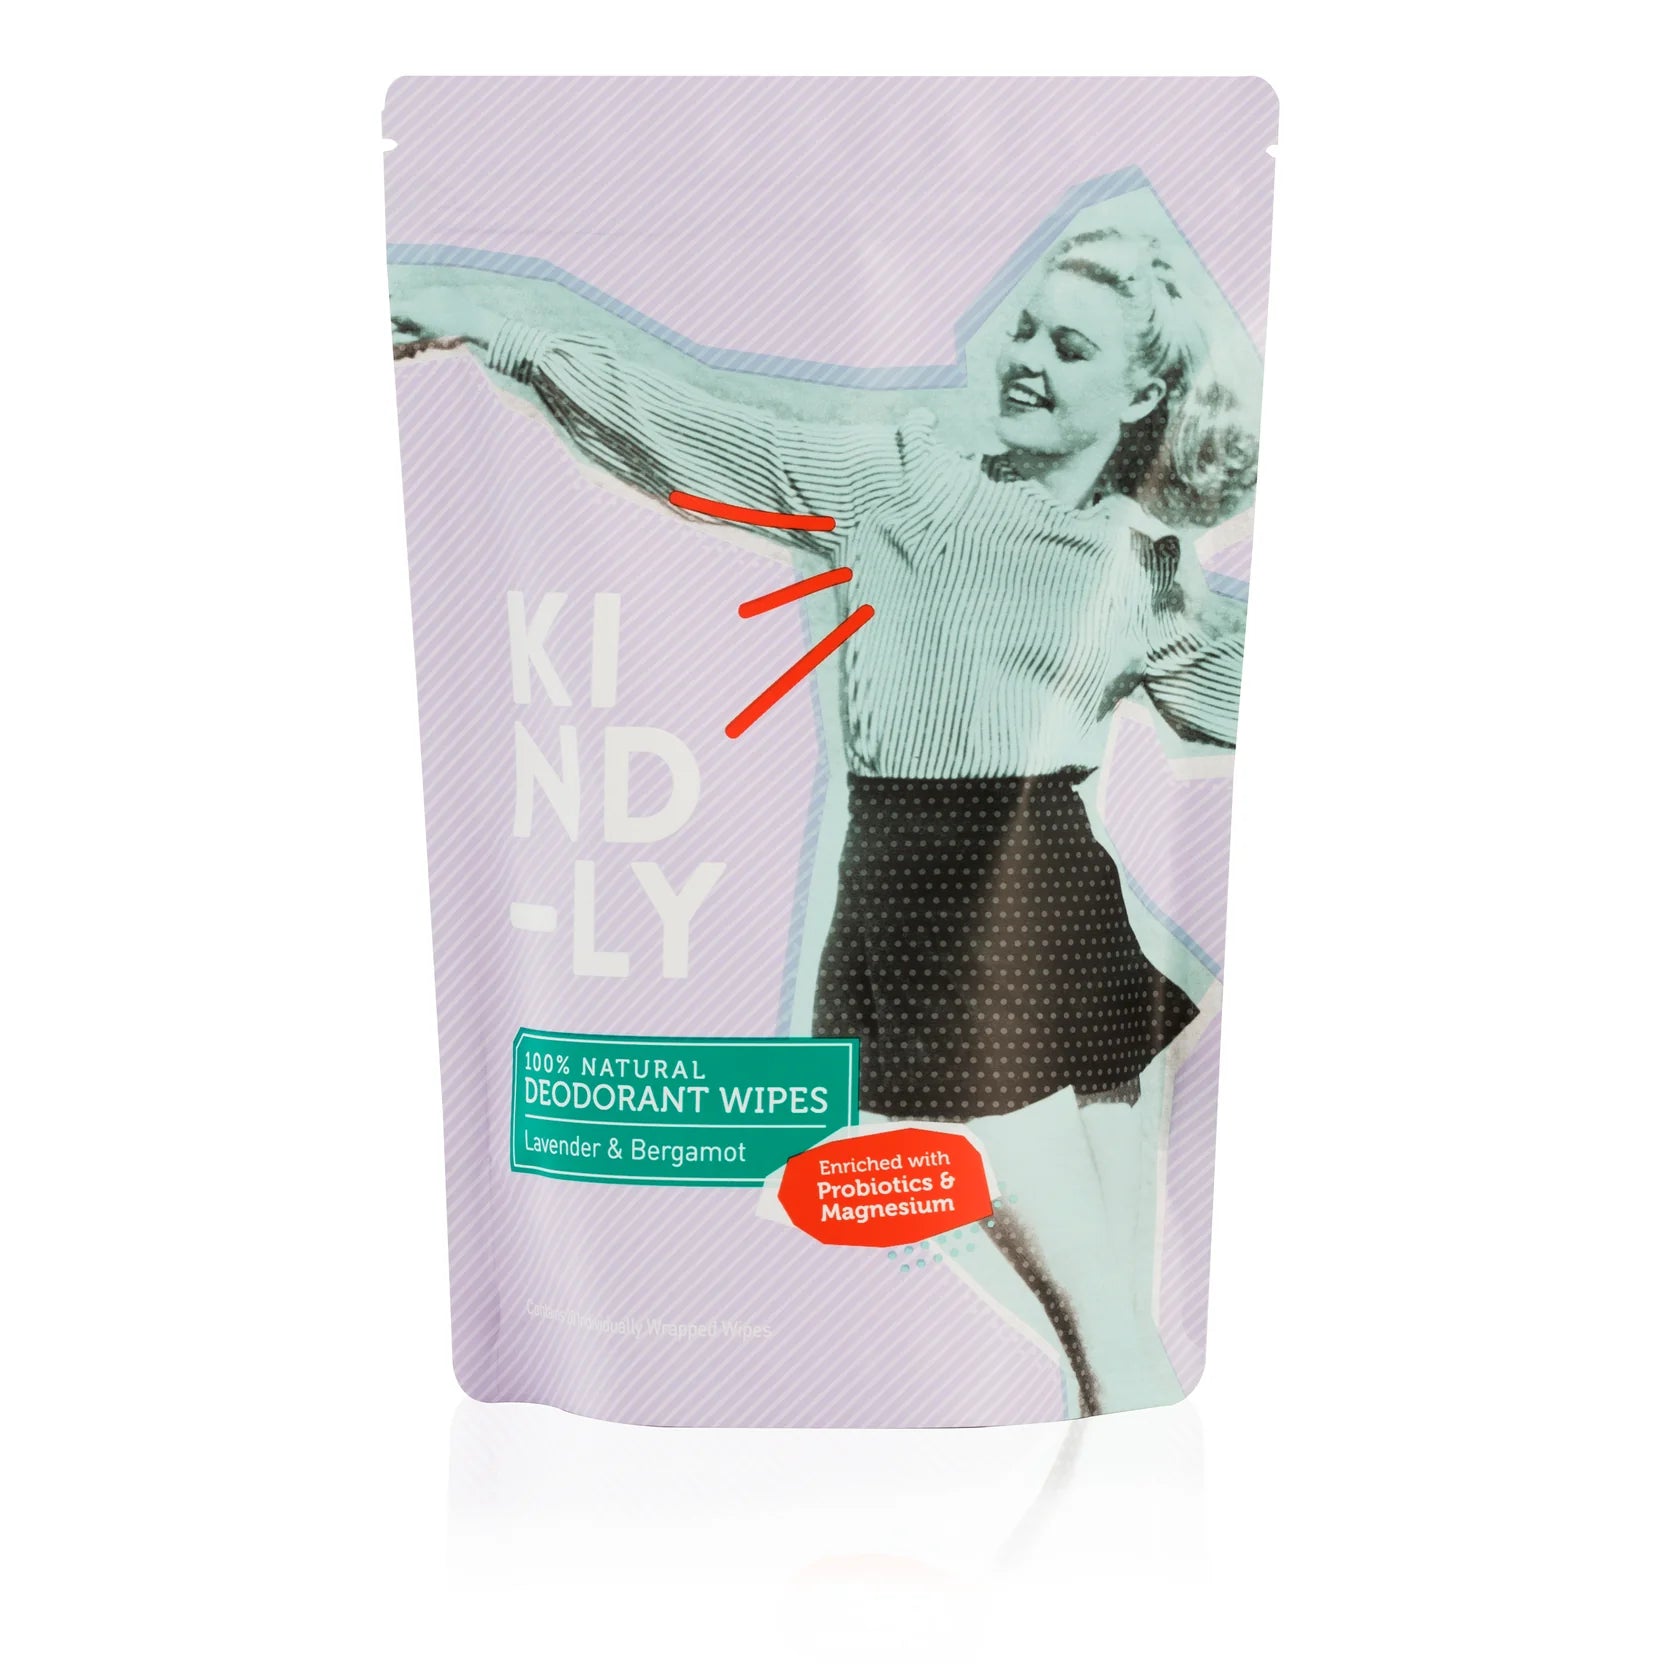 KIND-LY 100% Natural Deodorant Wipes - Lavender & Bergamot